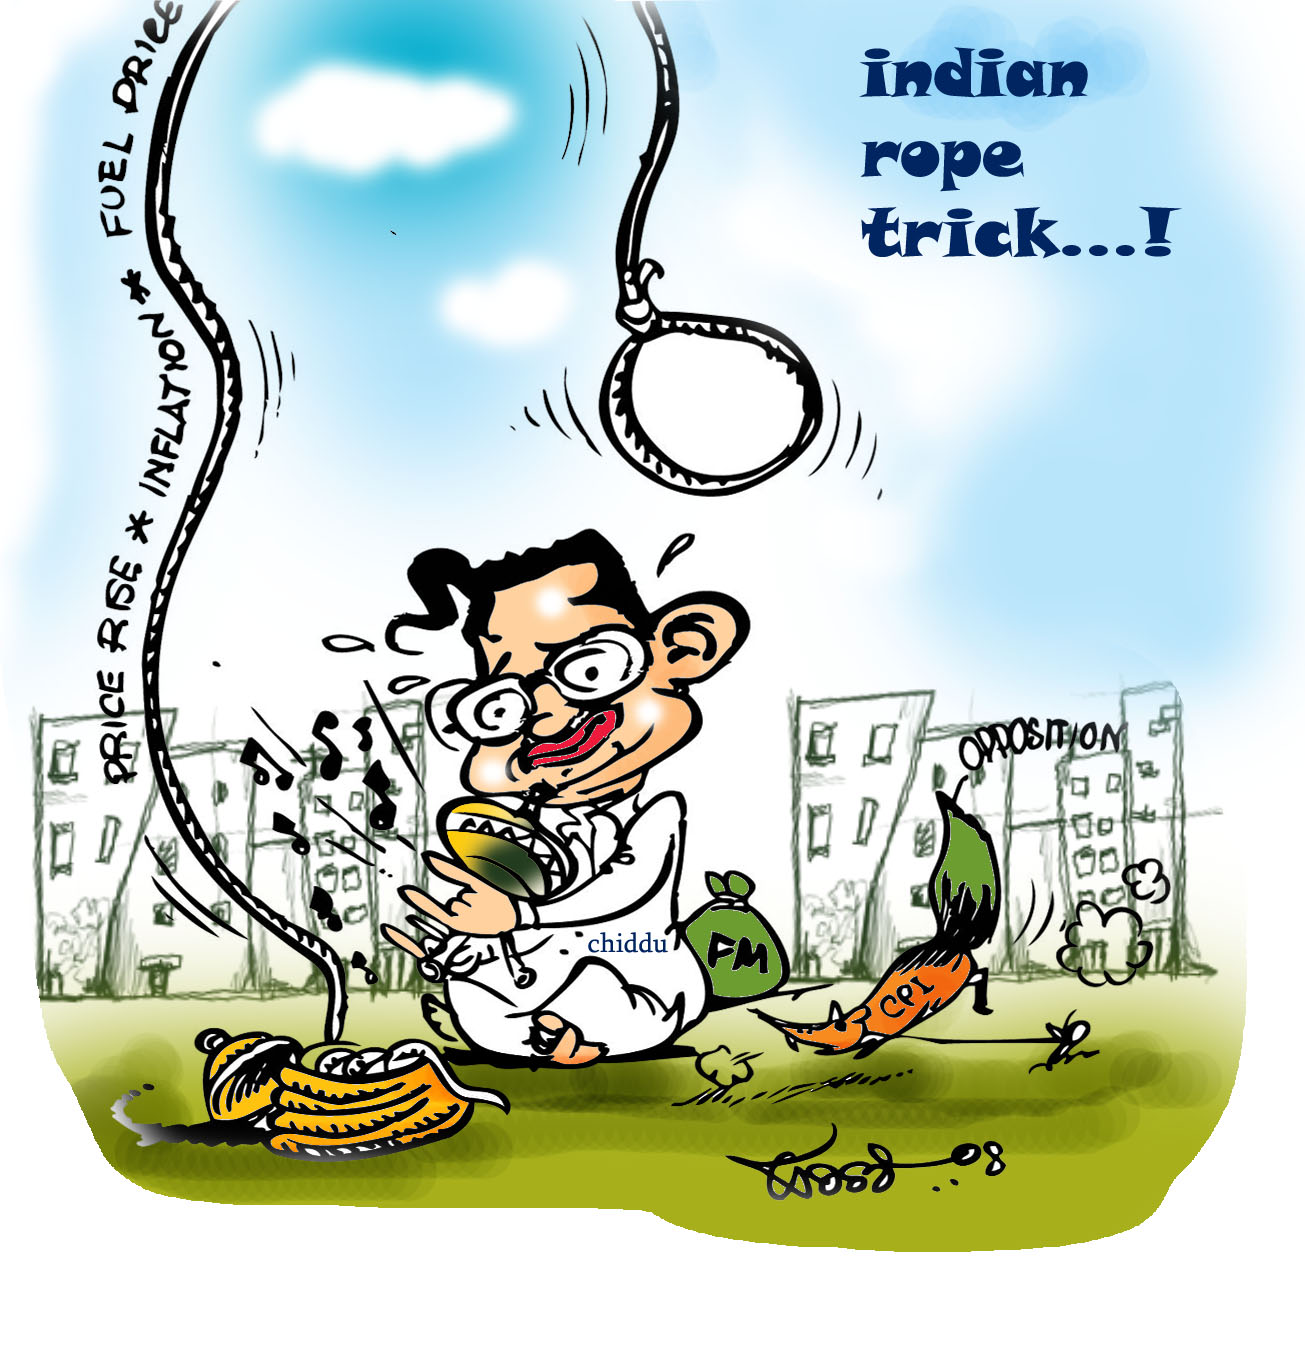 [chiddu-indian+rope+trick....jpg]